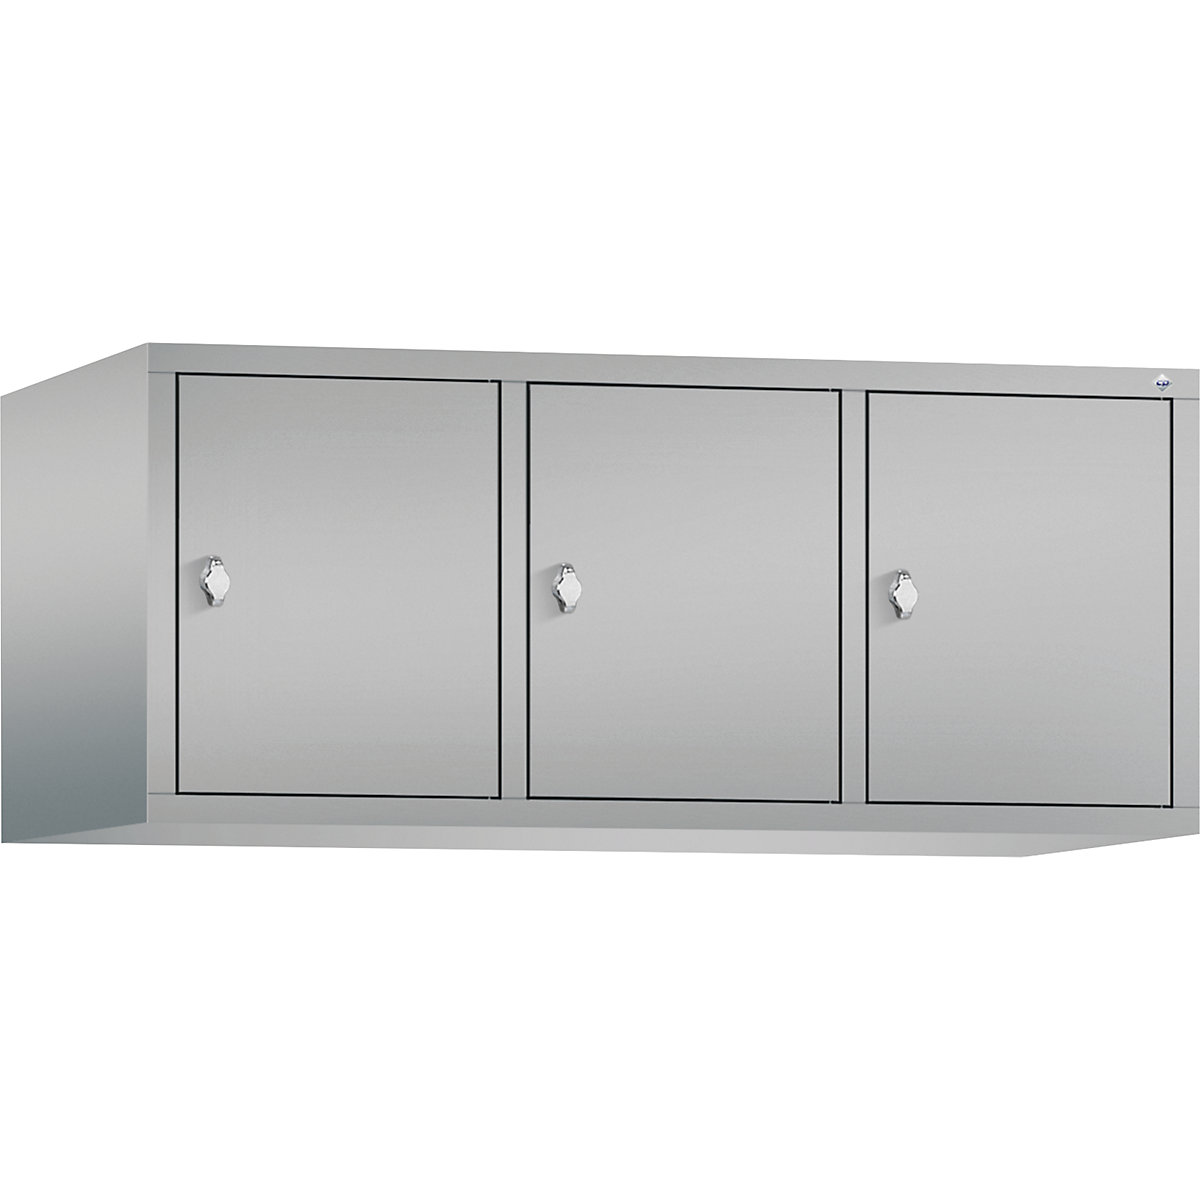 C+P – Altillo CLASSIC, 3 compartimentos, anchura de compartimento 400 mm, aluminio blanco